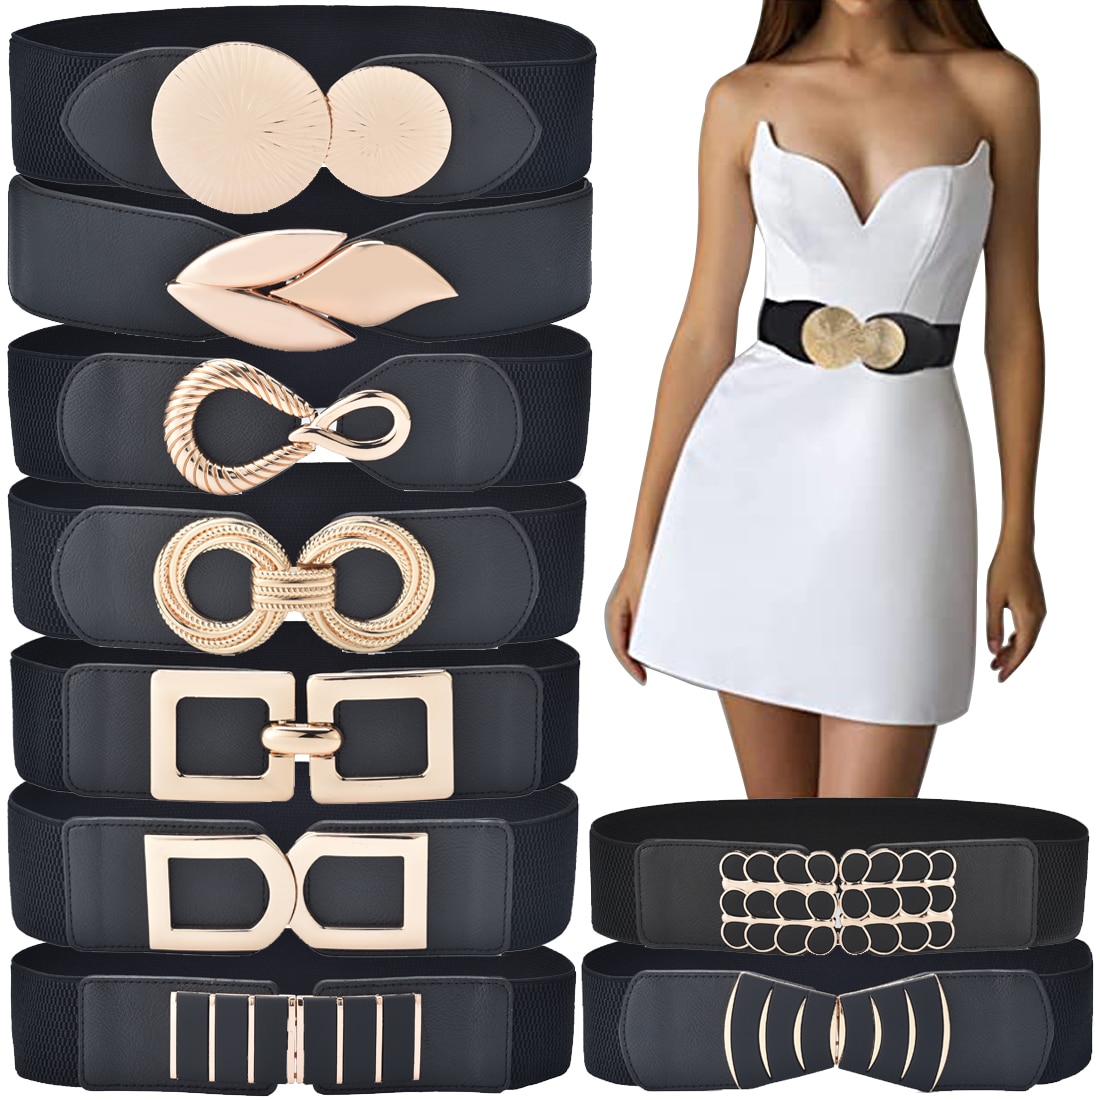 Cinturón ancho elástica para mujer, cinturones tipo cincha clásica elástica para vestidos, cinturón Fashion